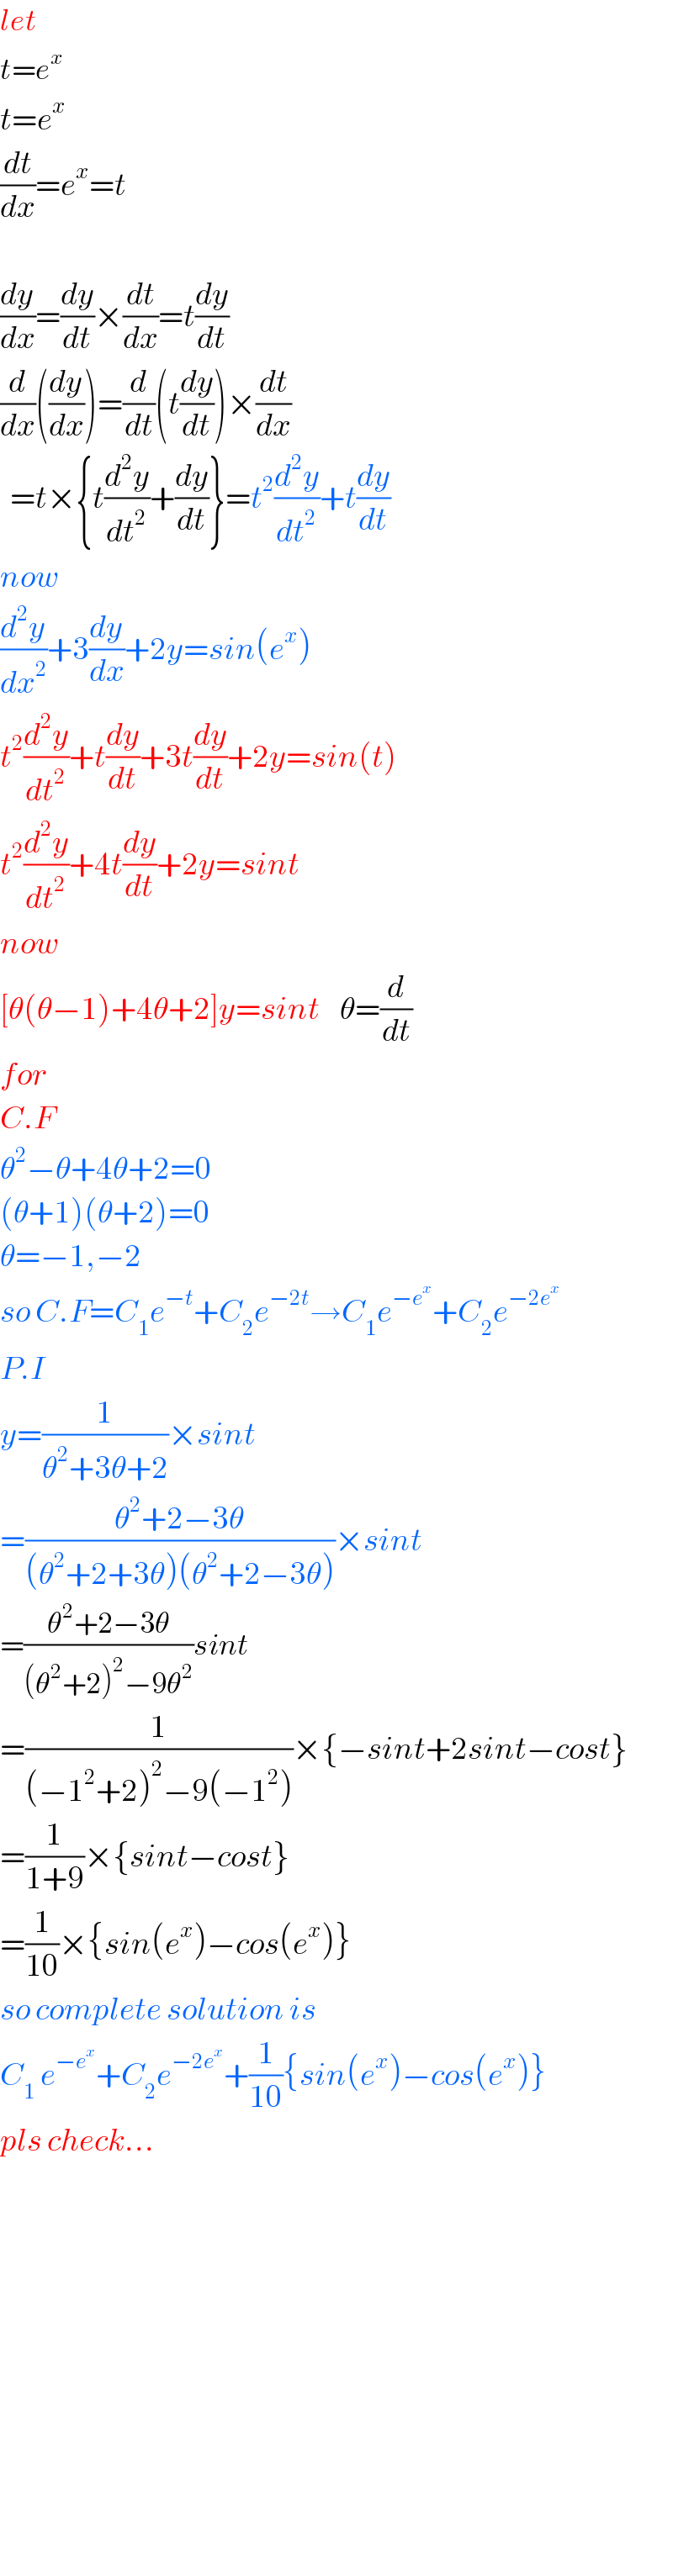 let  t=e^x   t=e^x   (dt/dx)=e^x =t    (dy/dx)=(dy/dt)×(dt/dx)=t(dy/dt)  (d/dx)((dy/dx))=(d/dt)(t(dy/dt))×(dt/dx)    =t×{t(d^2 y/dt^2 )+(dy/dt)}=t^2 (d^2 y/dt^2 )+t(dy/dt)  now  (d^2 y/dx^2 )+3(dy/dx)+2y=sin(e^x )  t^2 (d^2 y/dt^2 )+t(dy/dt)+3t(dy/dt)+2y=sin(t)  t^2 (d^2 y/dt^2 )+4t(dy/dt)+2y=sint  now  [θ(θ−1)+4θ+2]y=sint    θ=(d/dt)  for  C.F  θ^2 −θ+4θ+2=0  (θ+1)(θ+2)=0  θ=−1,−2  so C.F=C_1 e^(−t) +C_2 e^(−2t) →C_1 e^(−e^x ) +C_2 e^(−2e^x )   P.I  y=(1/(θ^2 +3θ+2))×sint  =((θ^2 +2−3θ)/((θ^2 +2+3θ)(θ^2 +2−3θ)))×sint  =((θ^2 +2−3θ)/((θ^2 +2)^2 −9θ^2 ))sint  =(1/((−1^2 +2)^2 −9(−1^2 )))×{−sint+2sint−cost}  =(1/(1+9))×{sint−cost}  =(1/(10))×{sin(e^x )−cos(e^x )}  so complete solution is  C_1  e^(−e^x ) +C_2 e^(−2e^x ) +(1/(10)){sin(e^x )−cos(e^x )}  pls check...                  